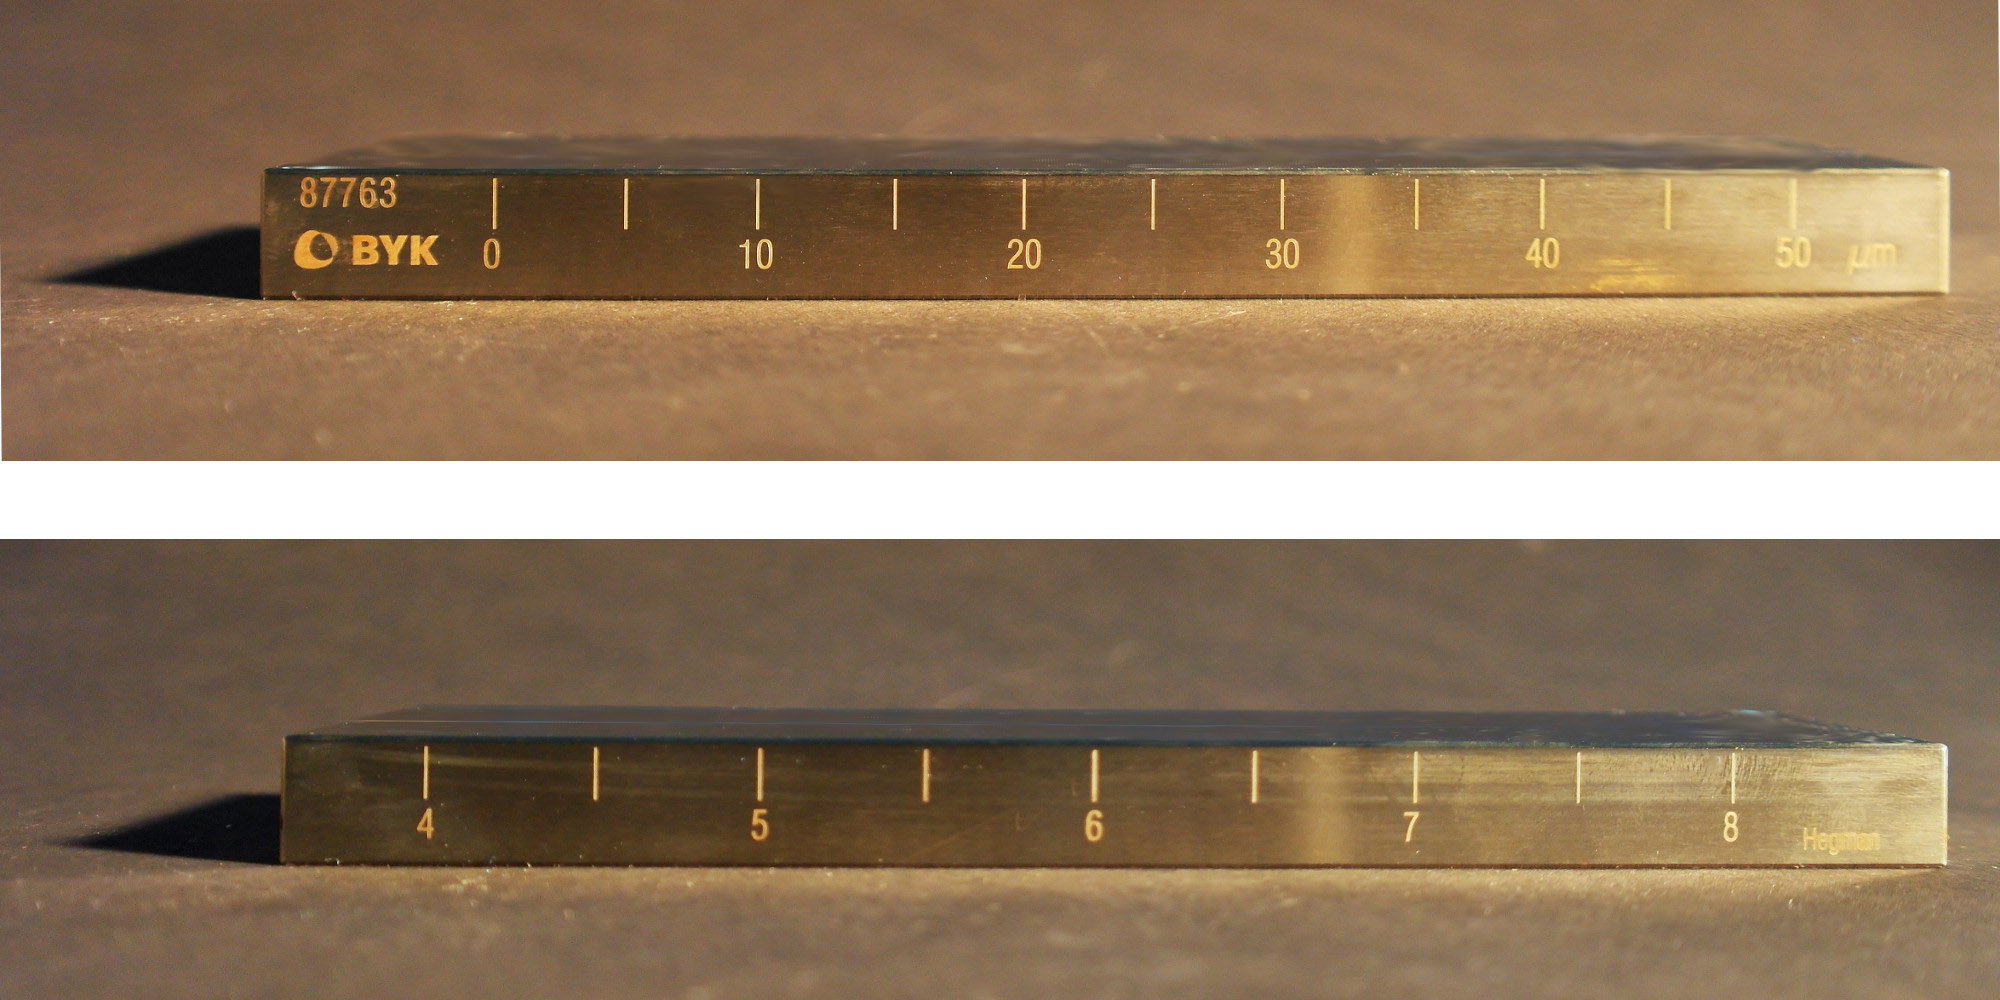 Die Skalen des Grindometers sind dargestellt, wobei einerseits die Zahlen in µm und andererseits in Hegmann-Werten aufgetragen sind.